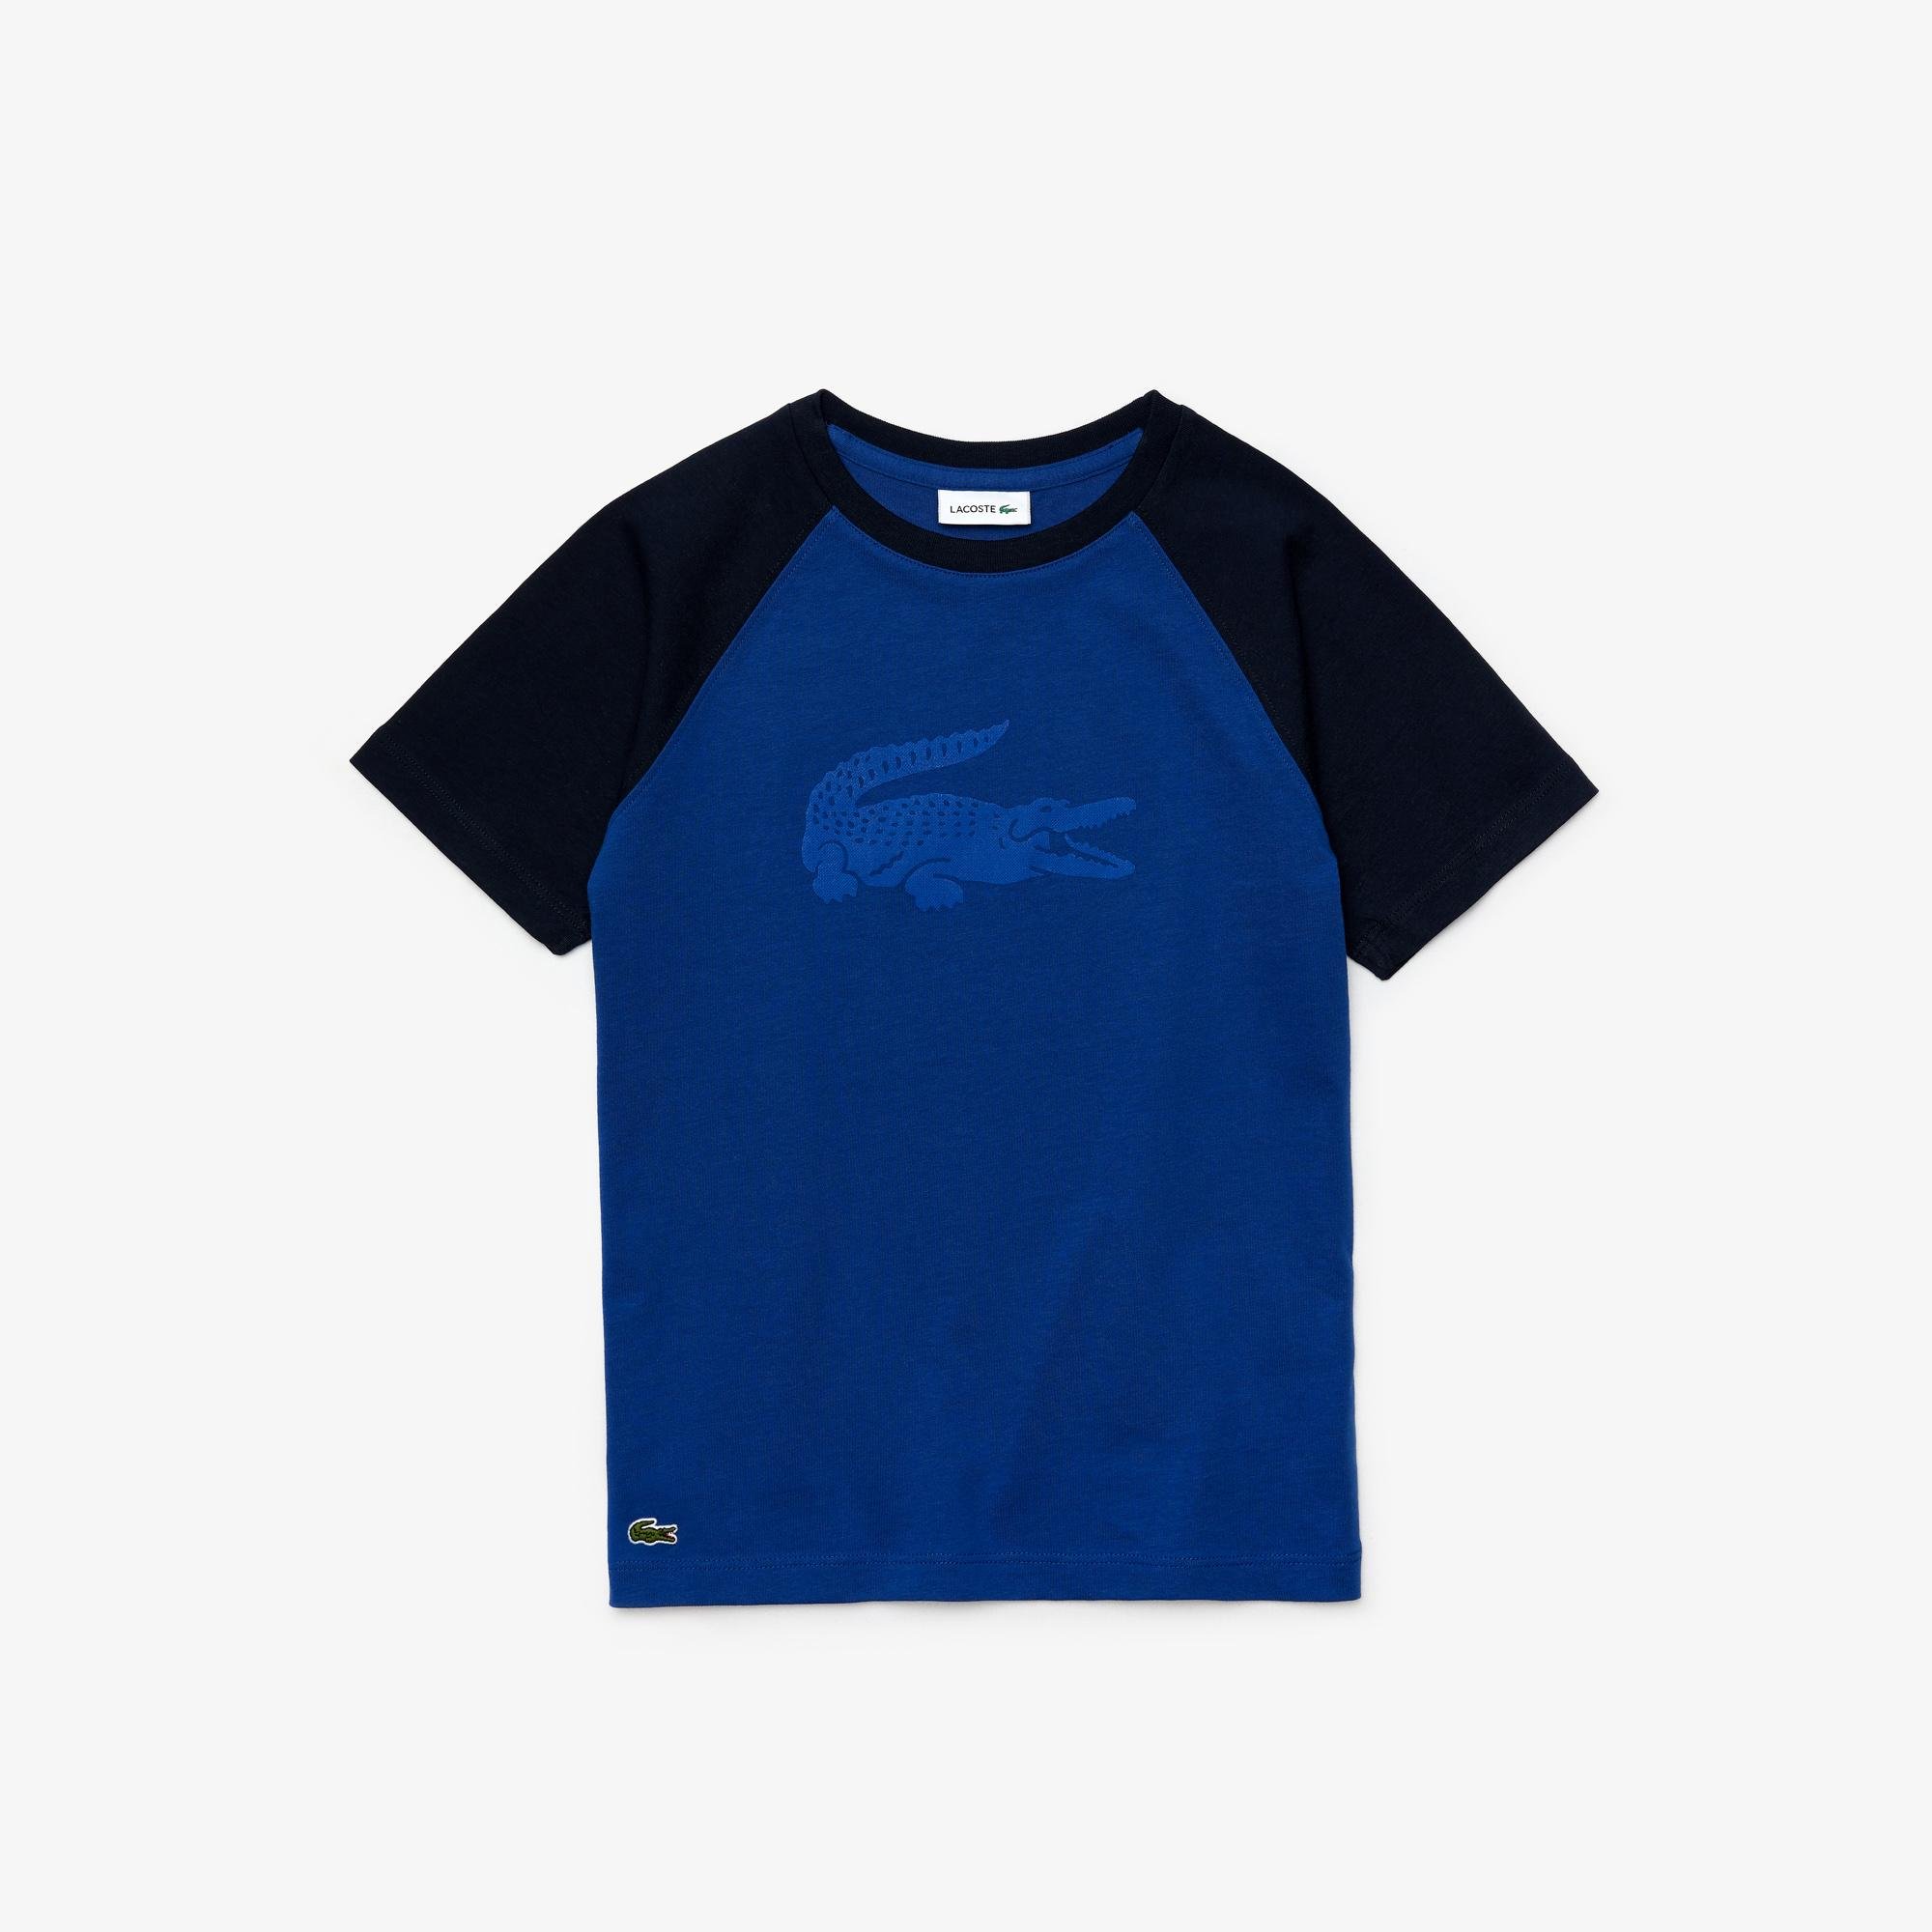 Lacoste Boy's Crocodile Print Bicolour Cotton T-Shirt